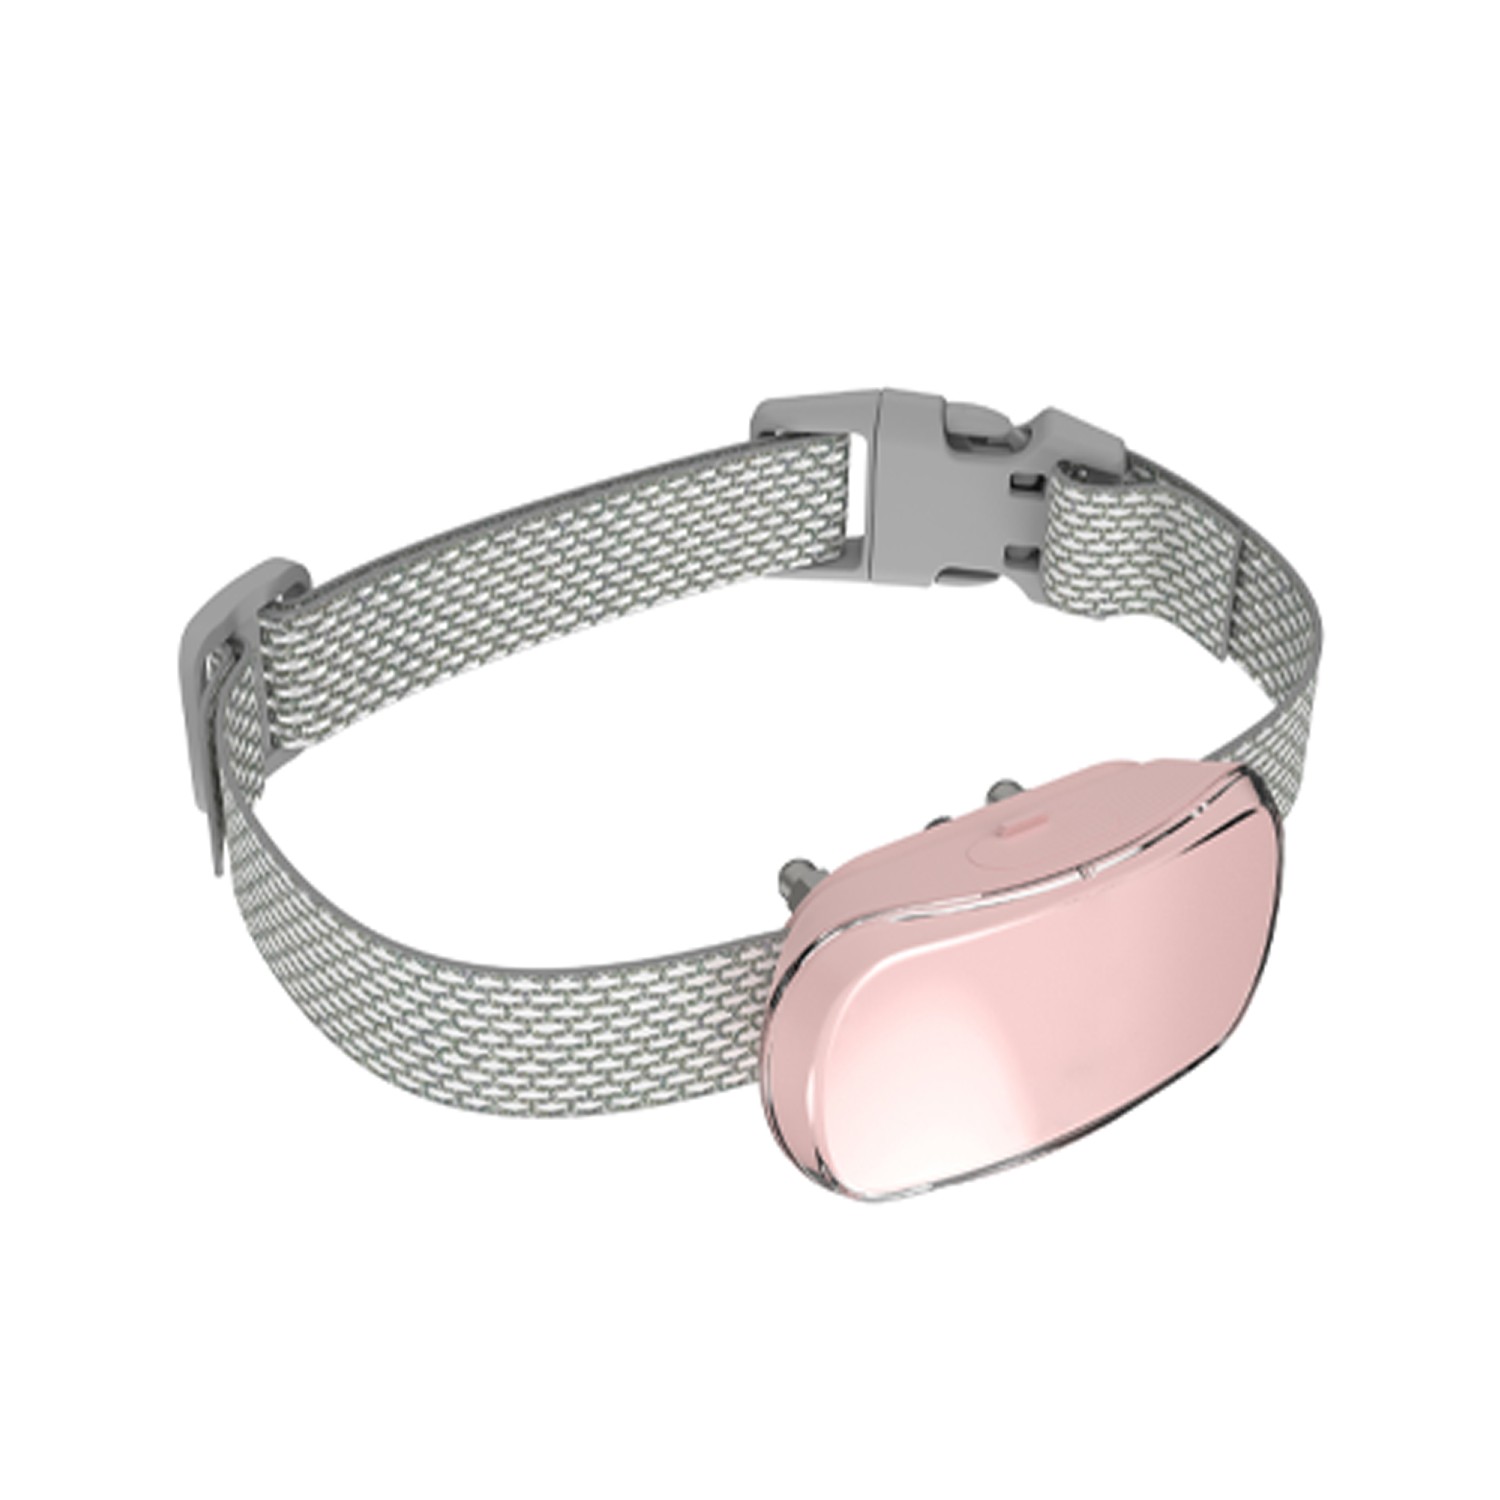 Pet Life Crescendo LED 5-Level Automated Vibration Sound & Stimulation Anti-Bark Dog Collar - Pink